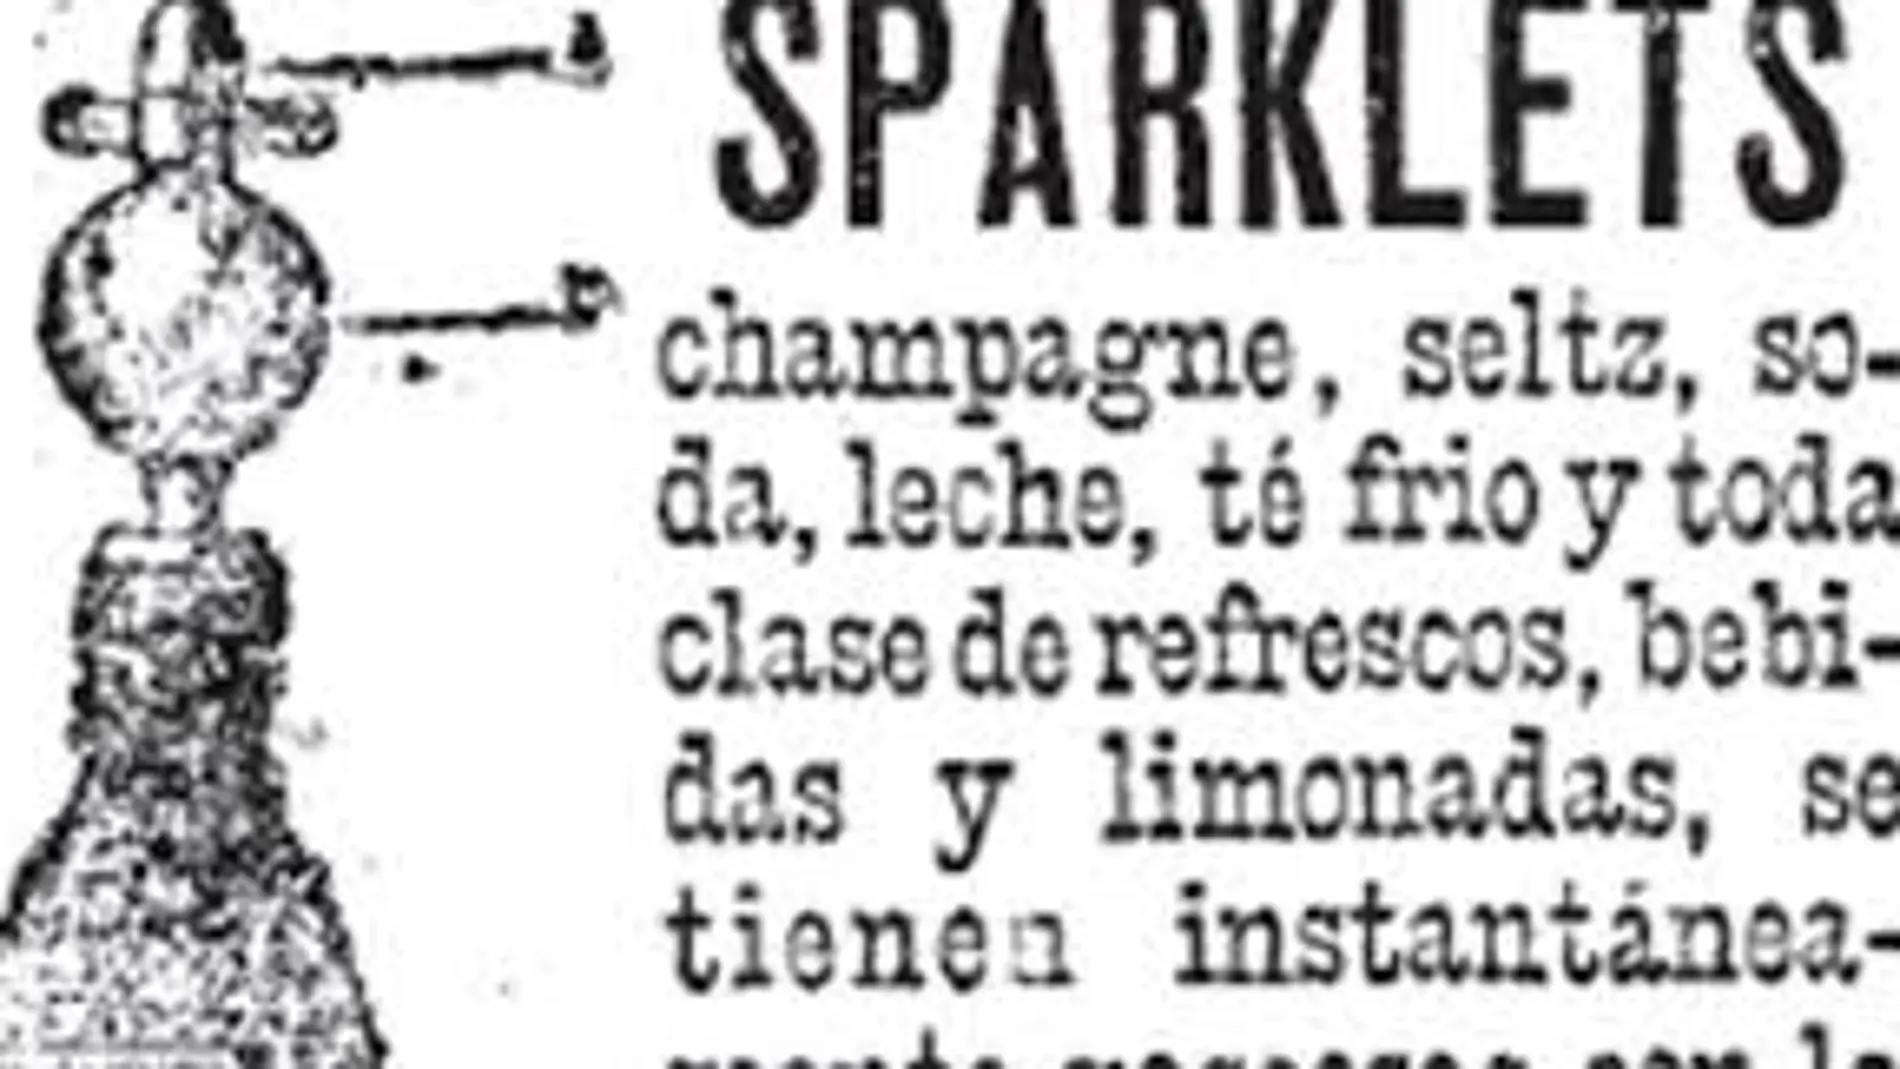 Sparklets, bebidas de otra época